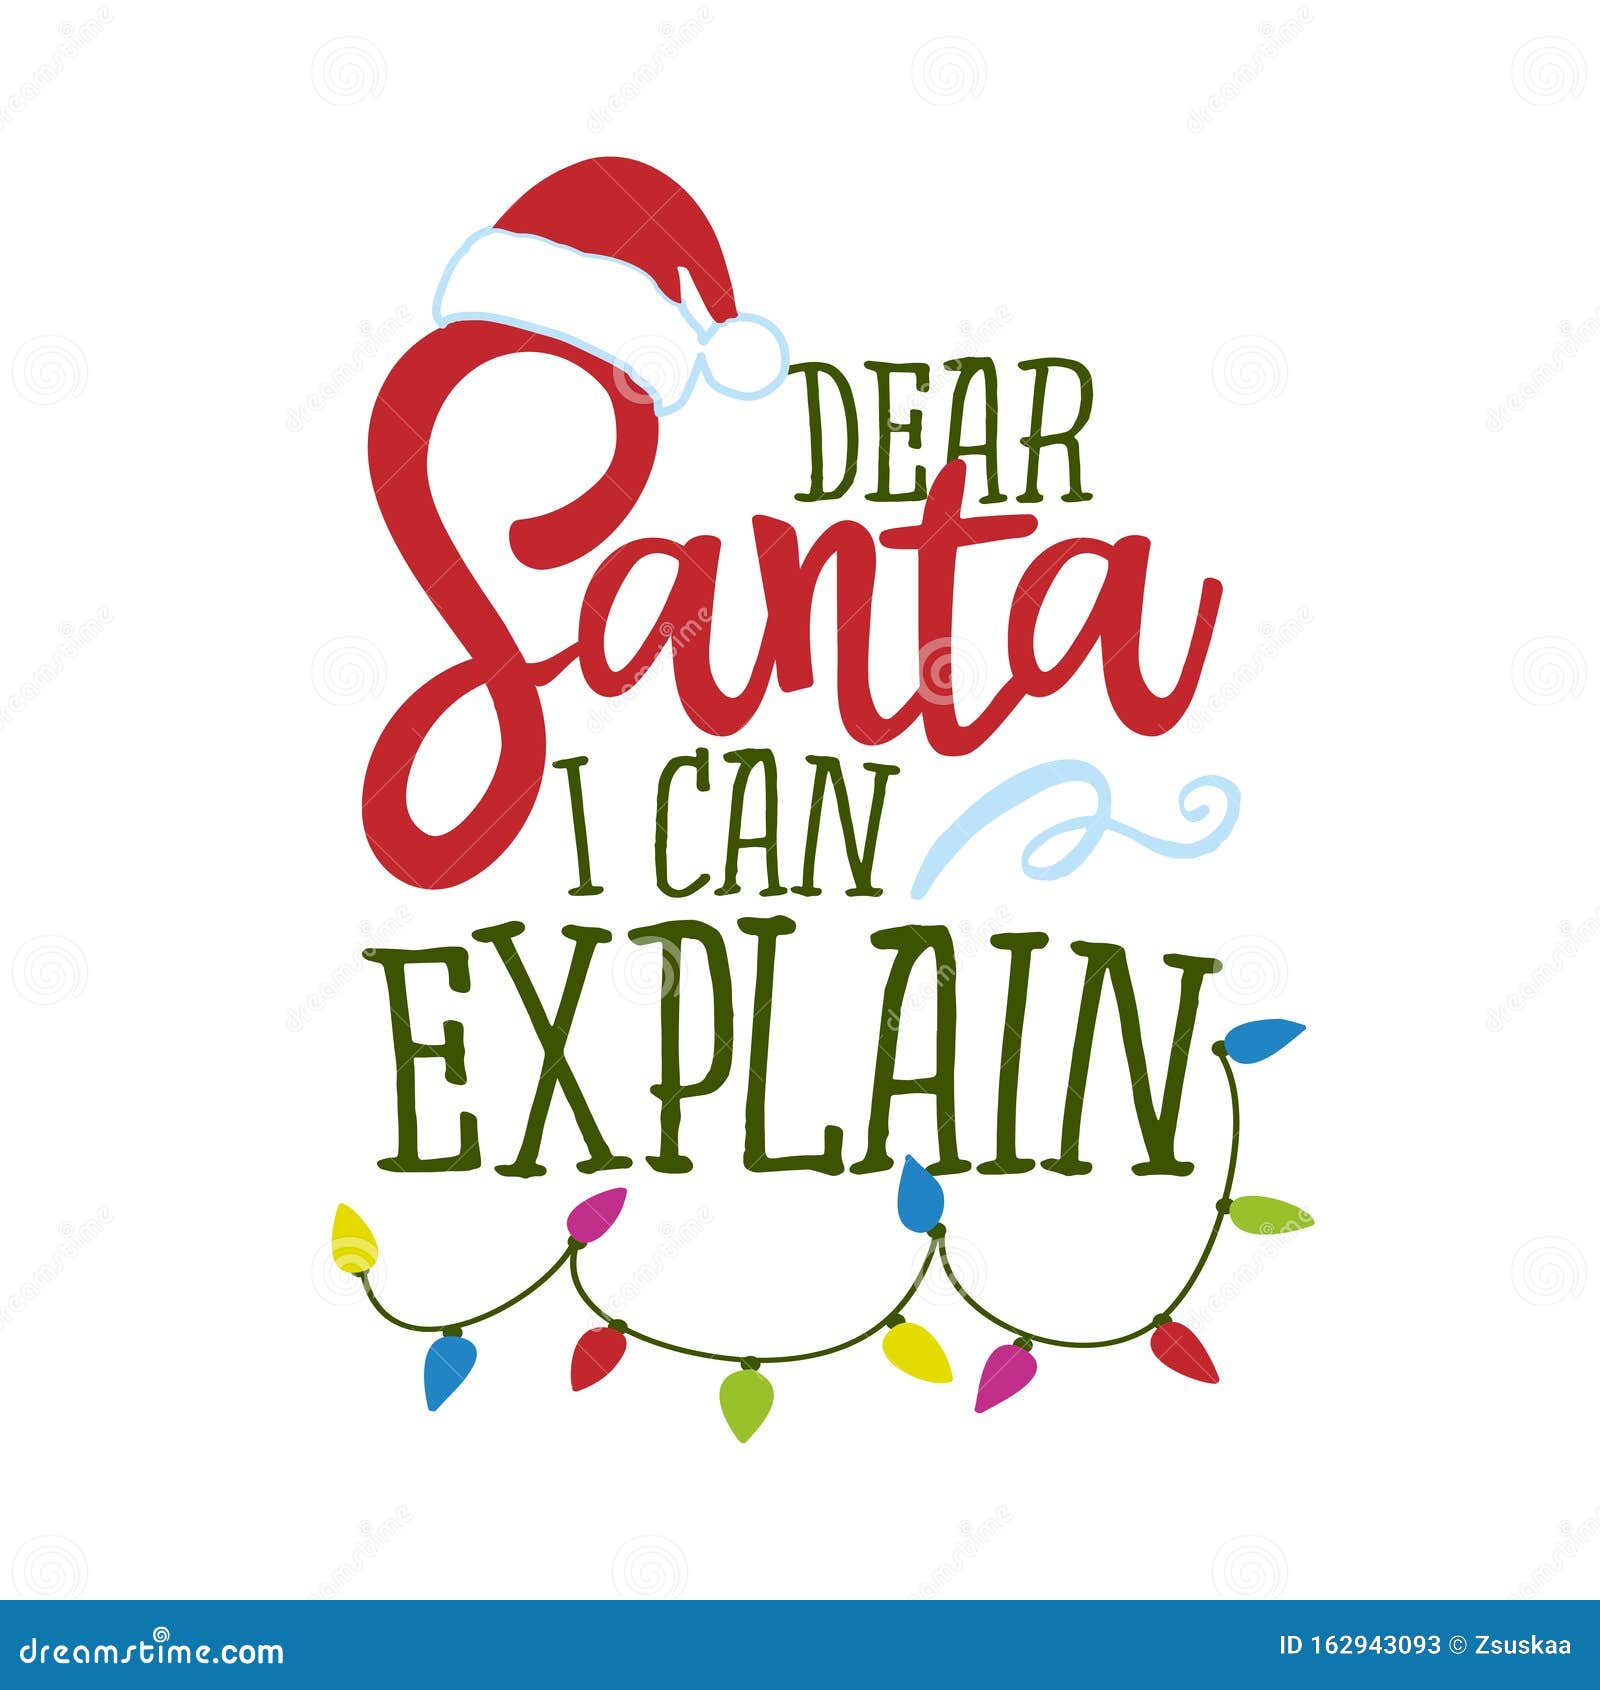 dear santa, i can explain - funny phrase for christmas.